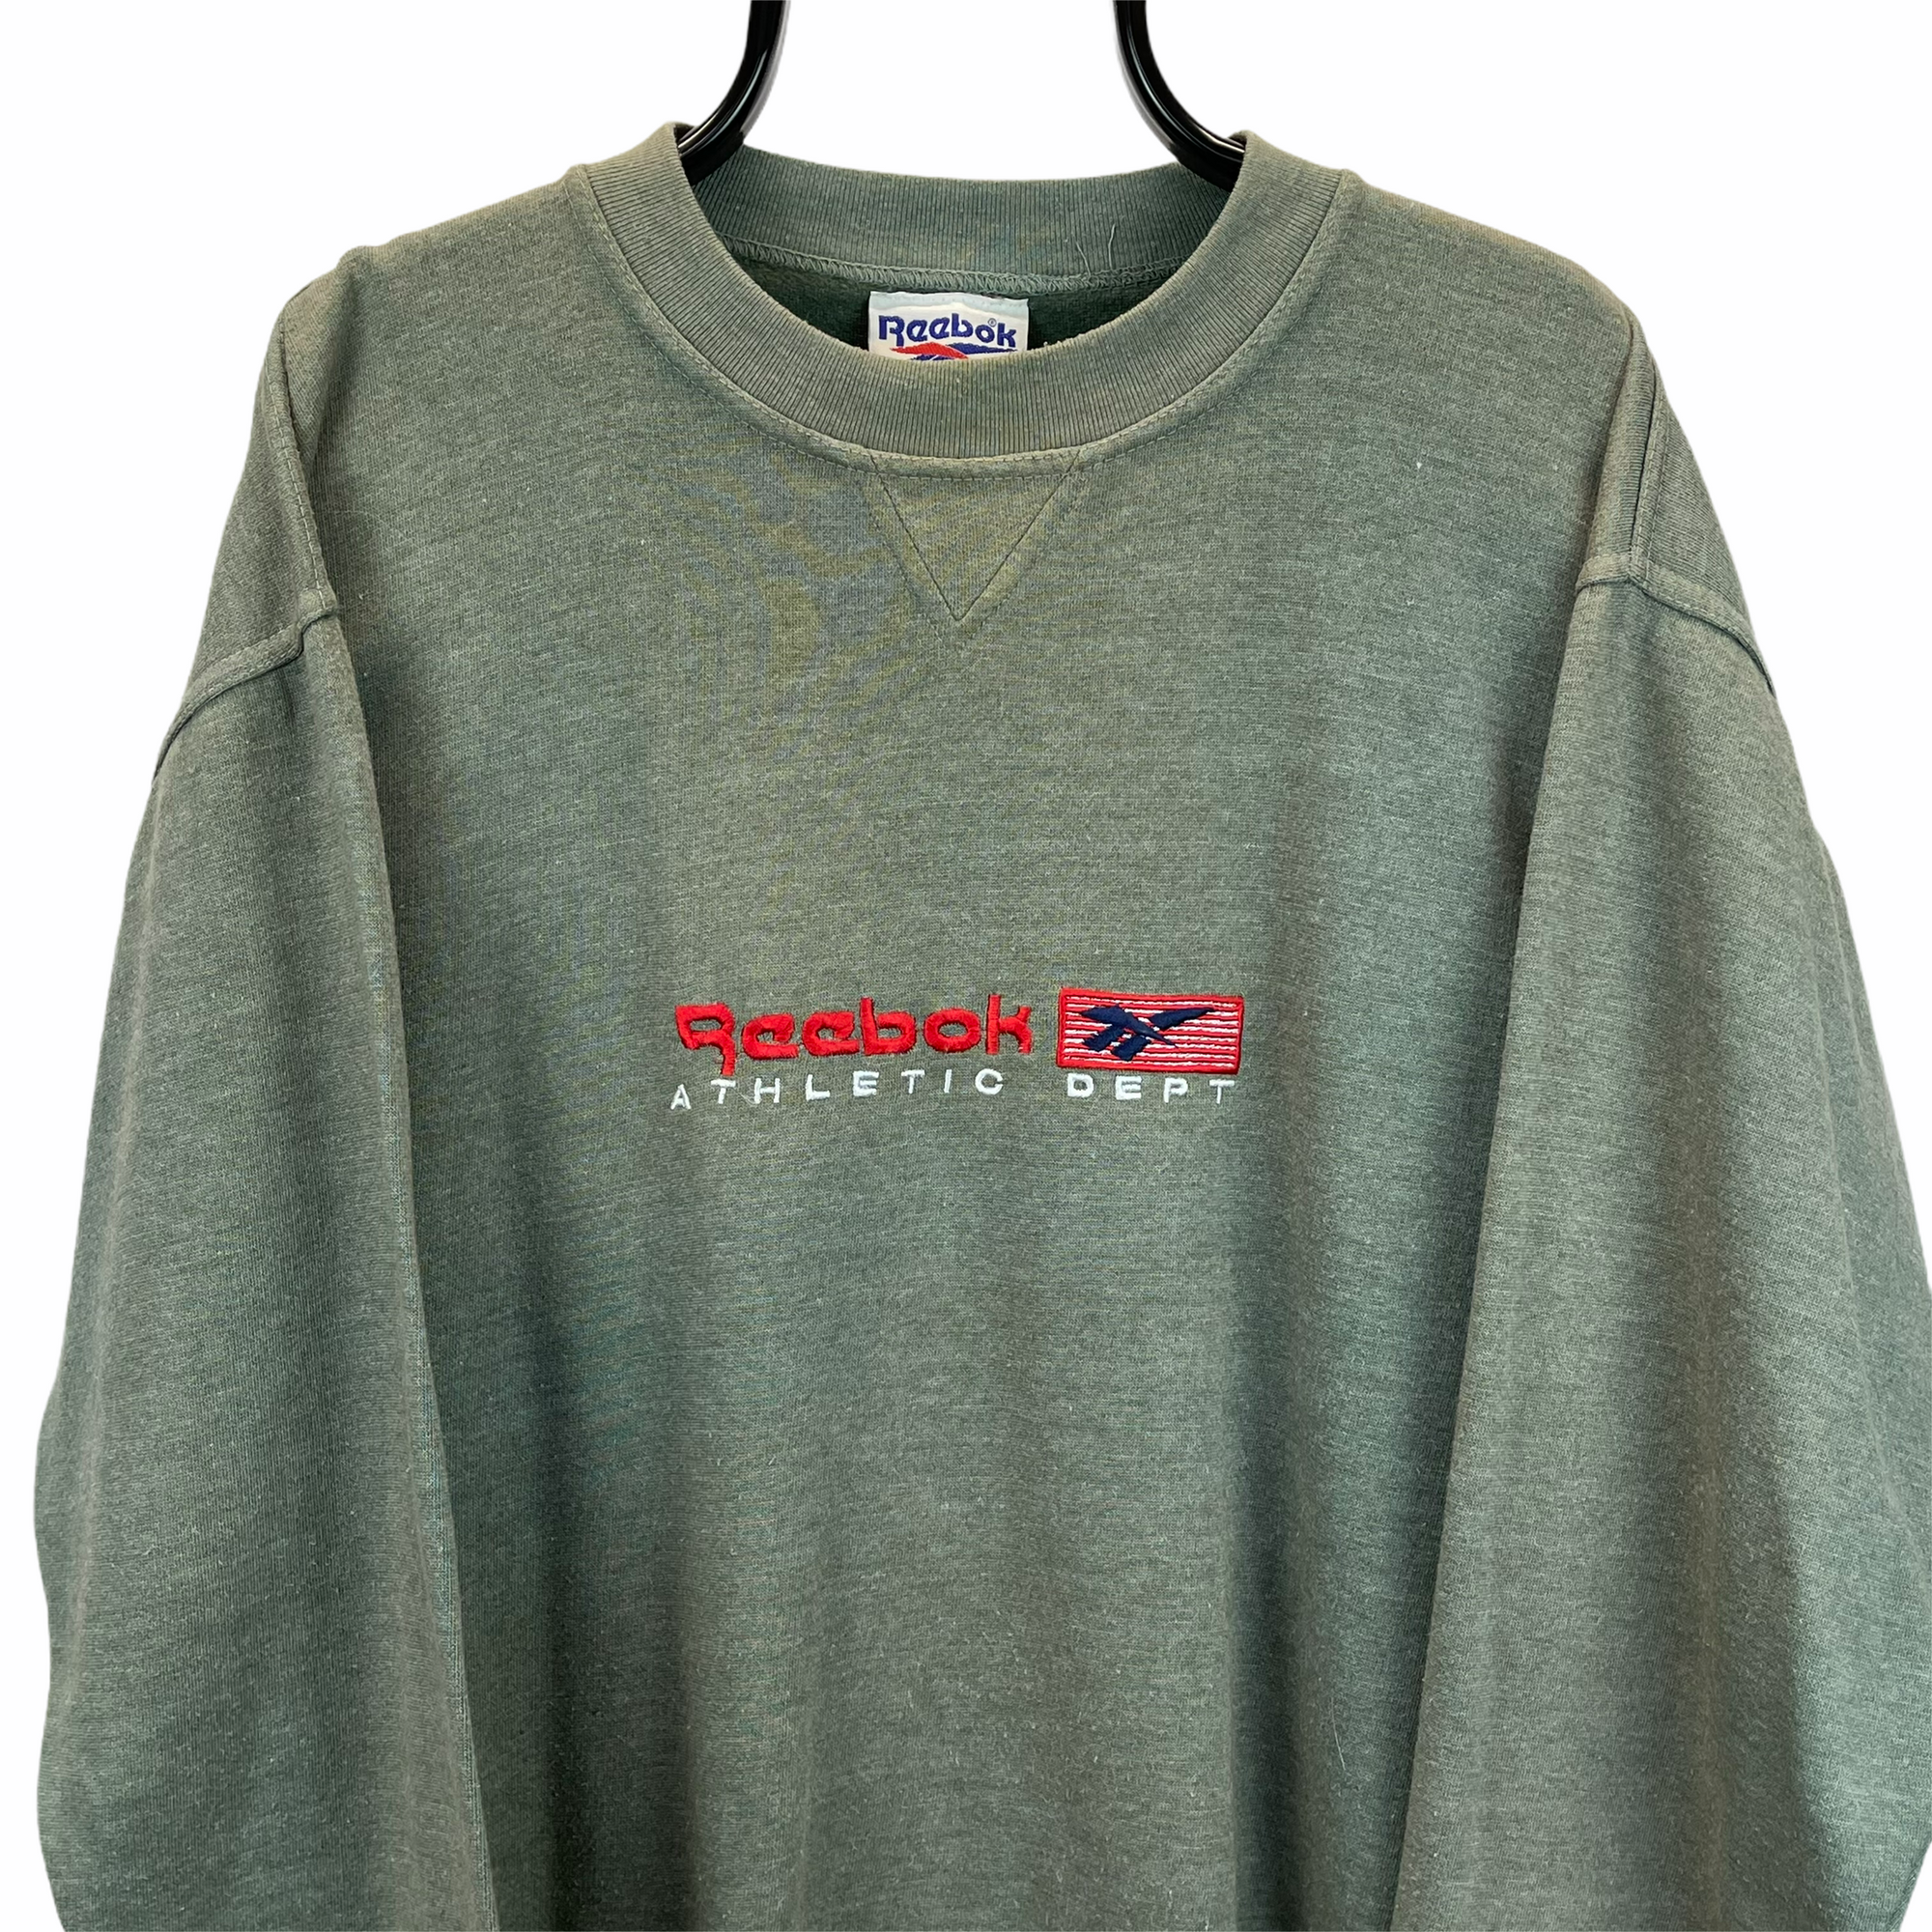 Vintage 80s Reebok Spellout Sweatshirt in Green & Red - Men's Large/Women's XL